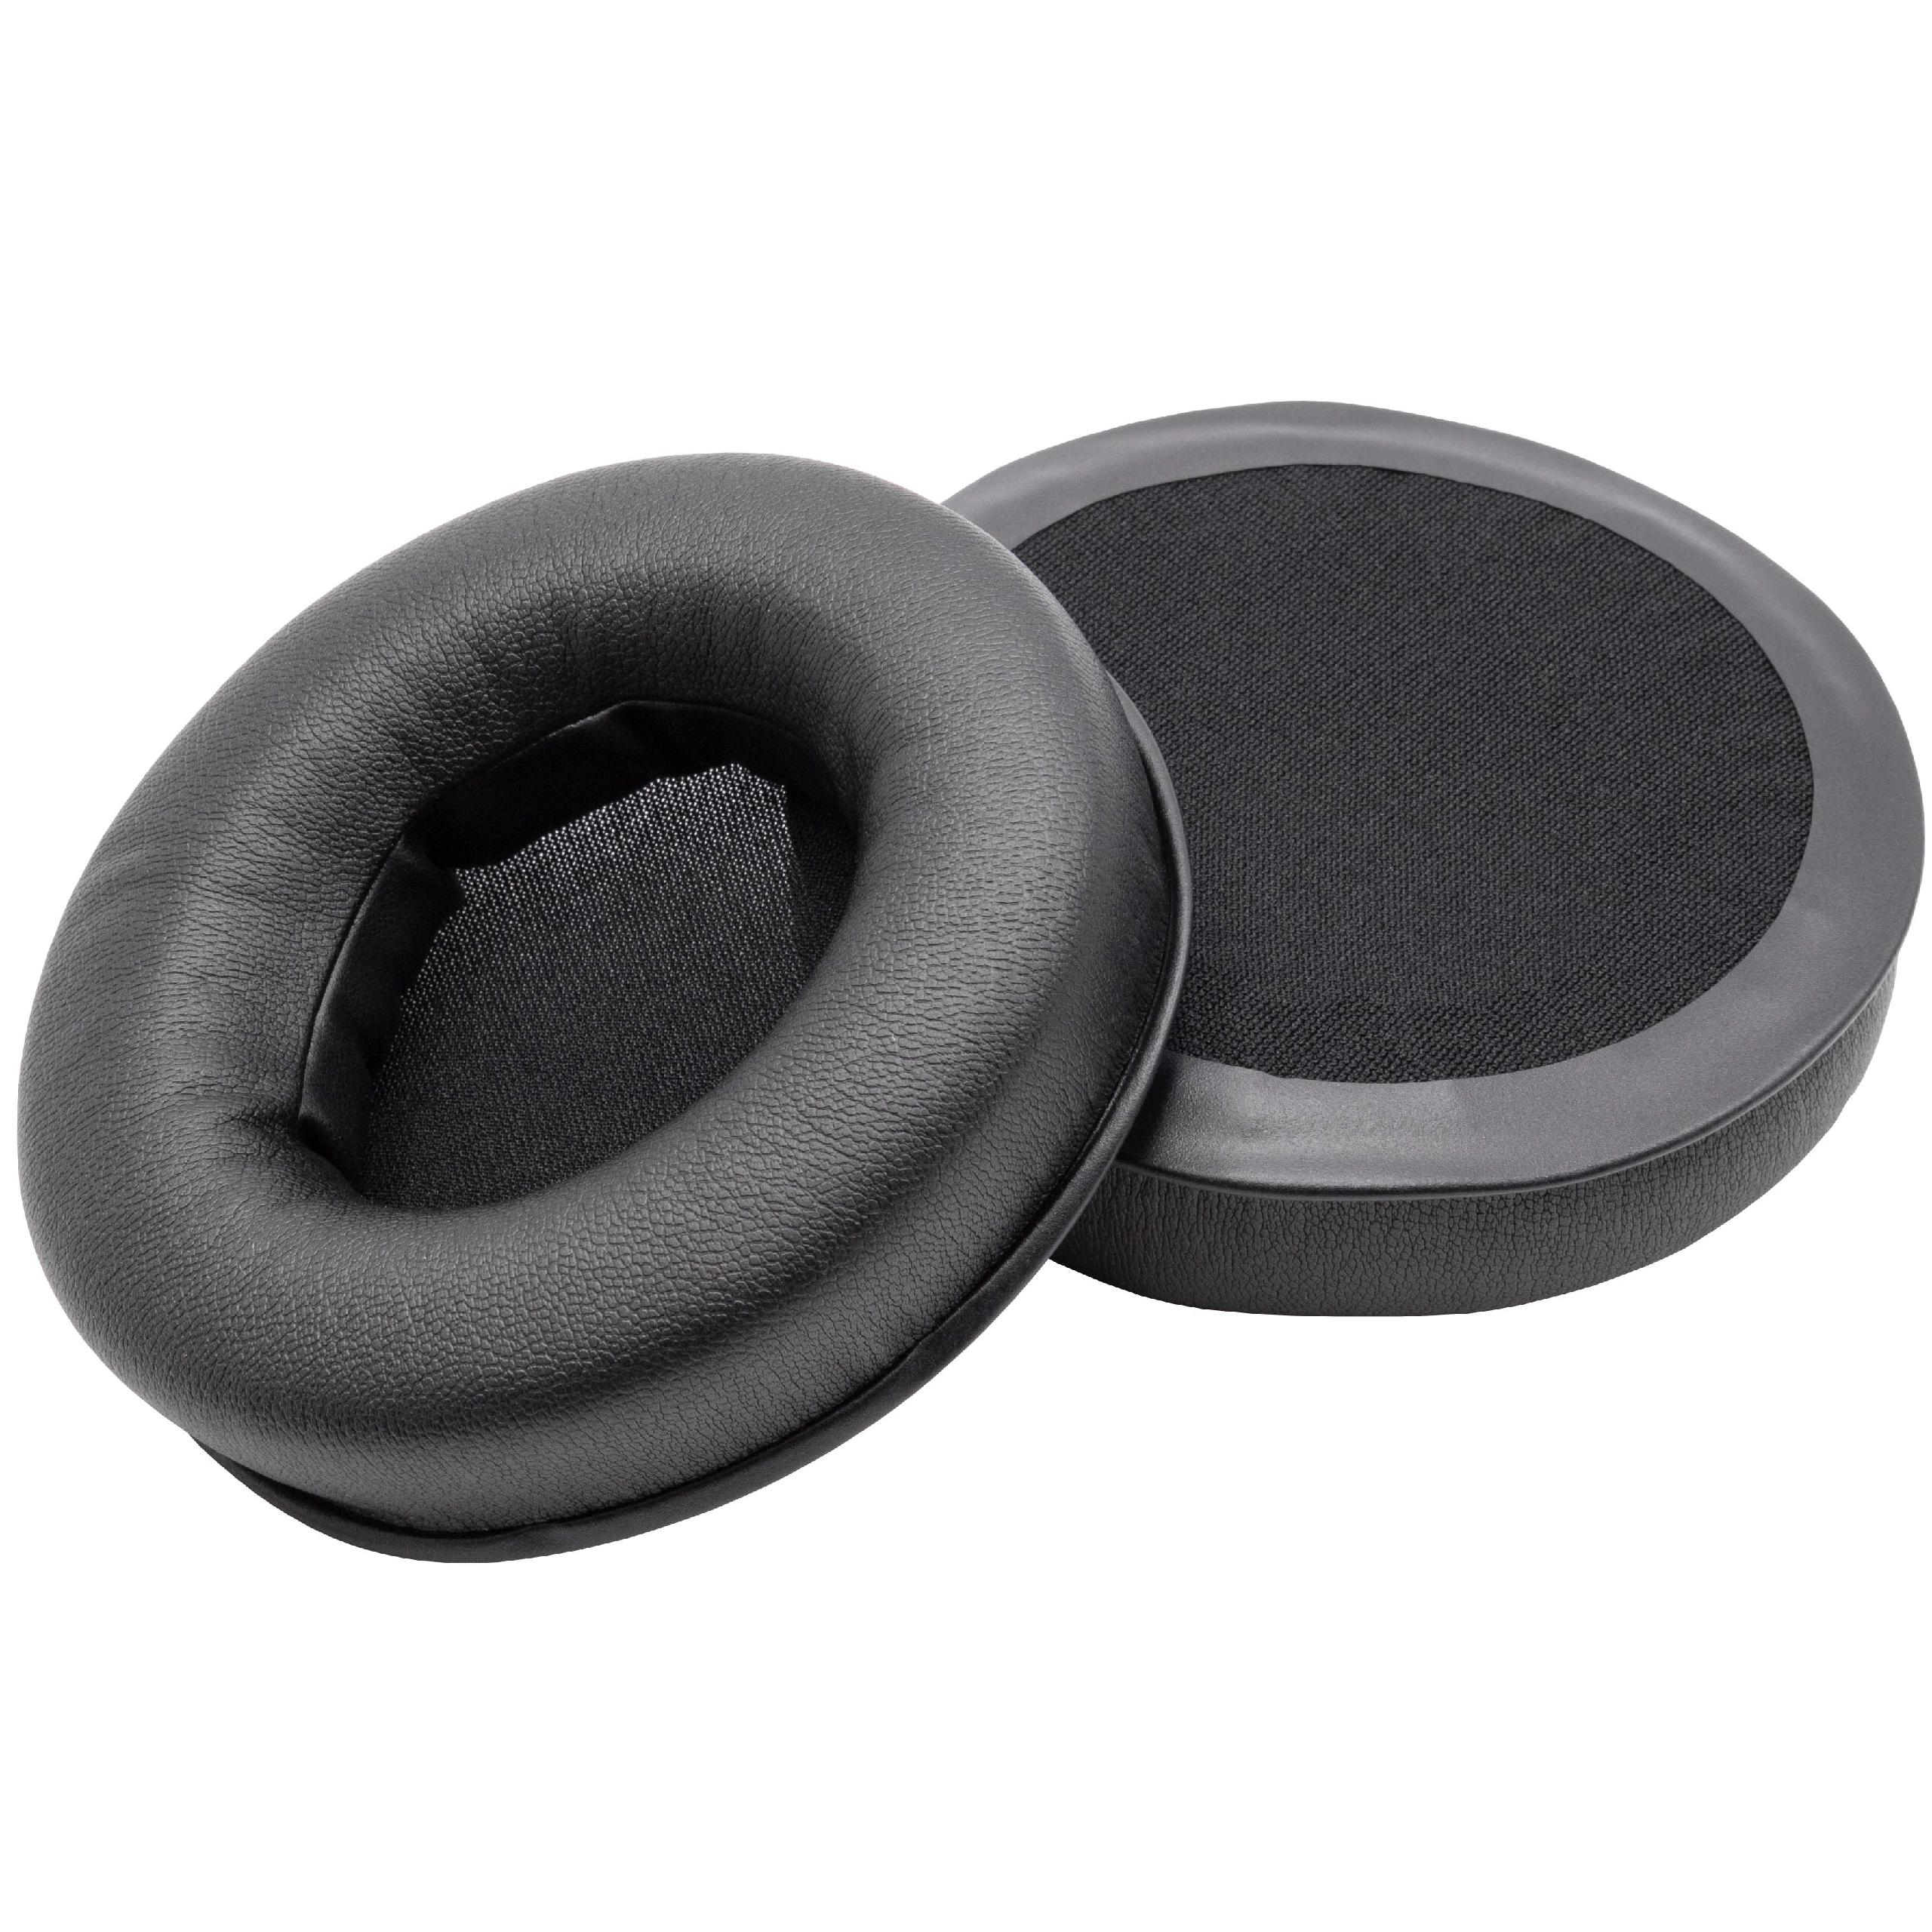 Ohrenpolster passend für Razer Kraken Kopfhörer u.a. - Polyurethan / Schaumstoff, 8,7 cm Außendurchmesser, 20 